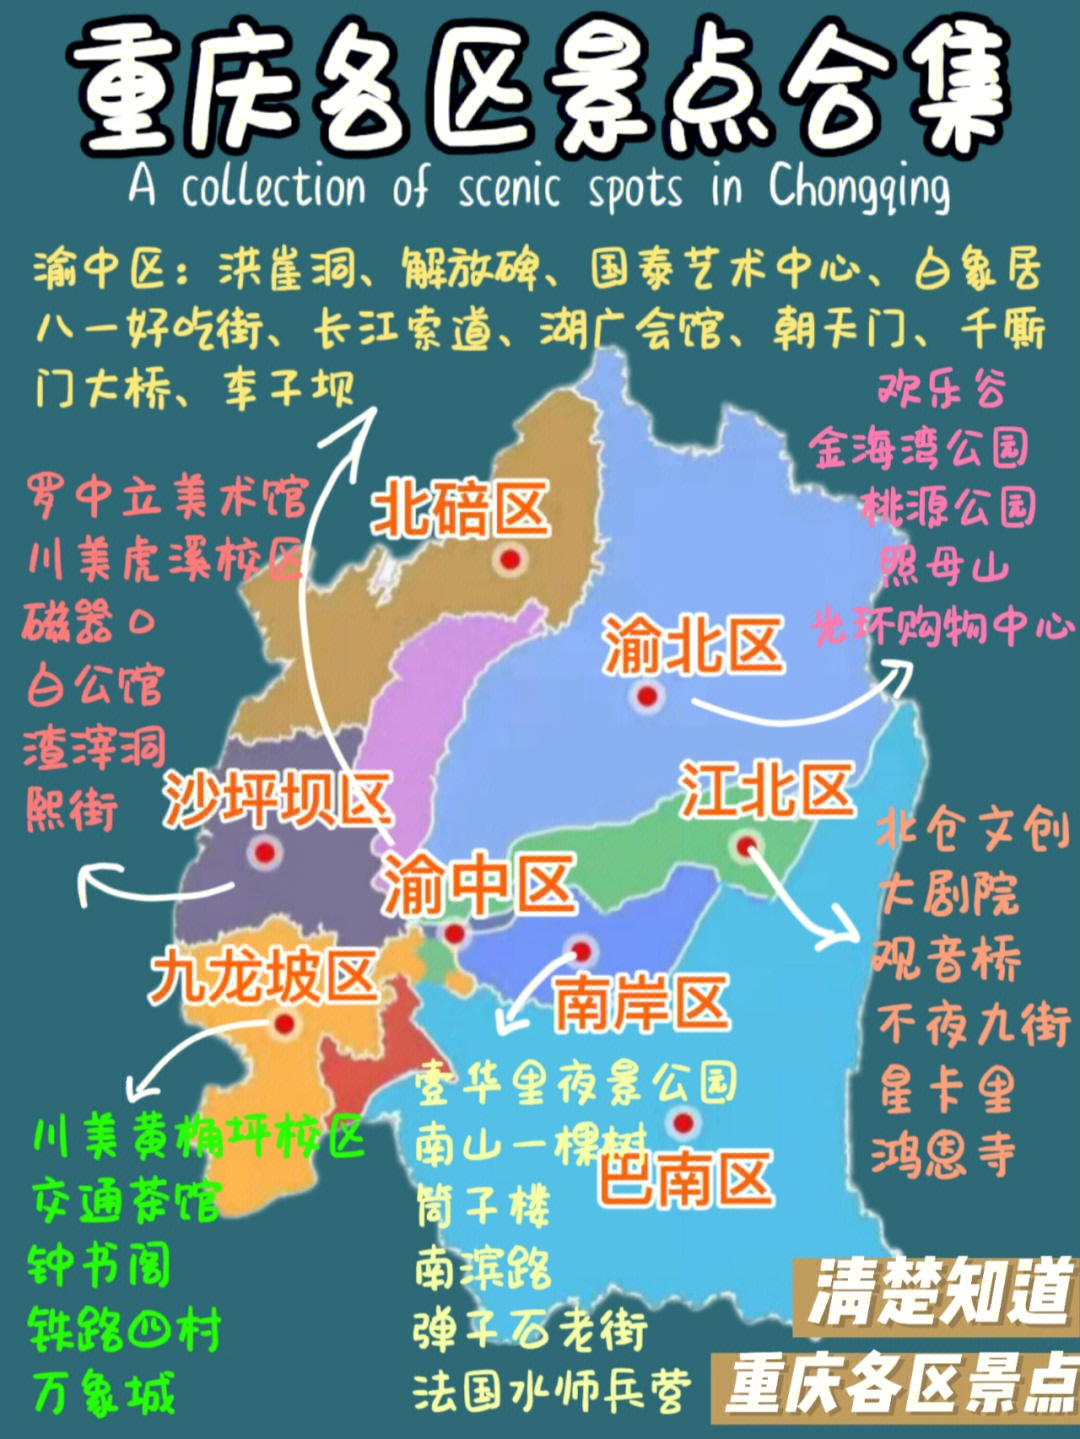 重庆攻略各区超全景点图清楚明白